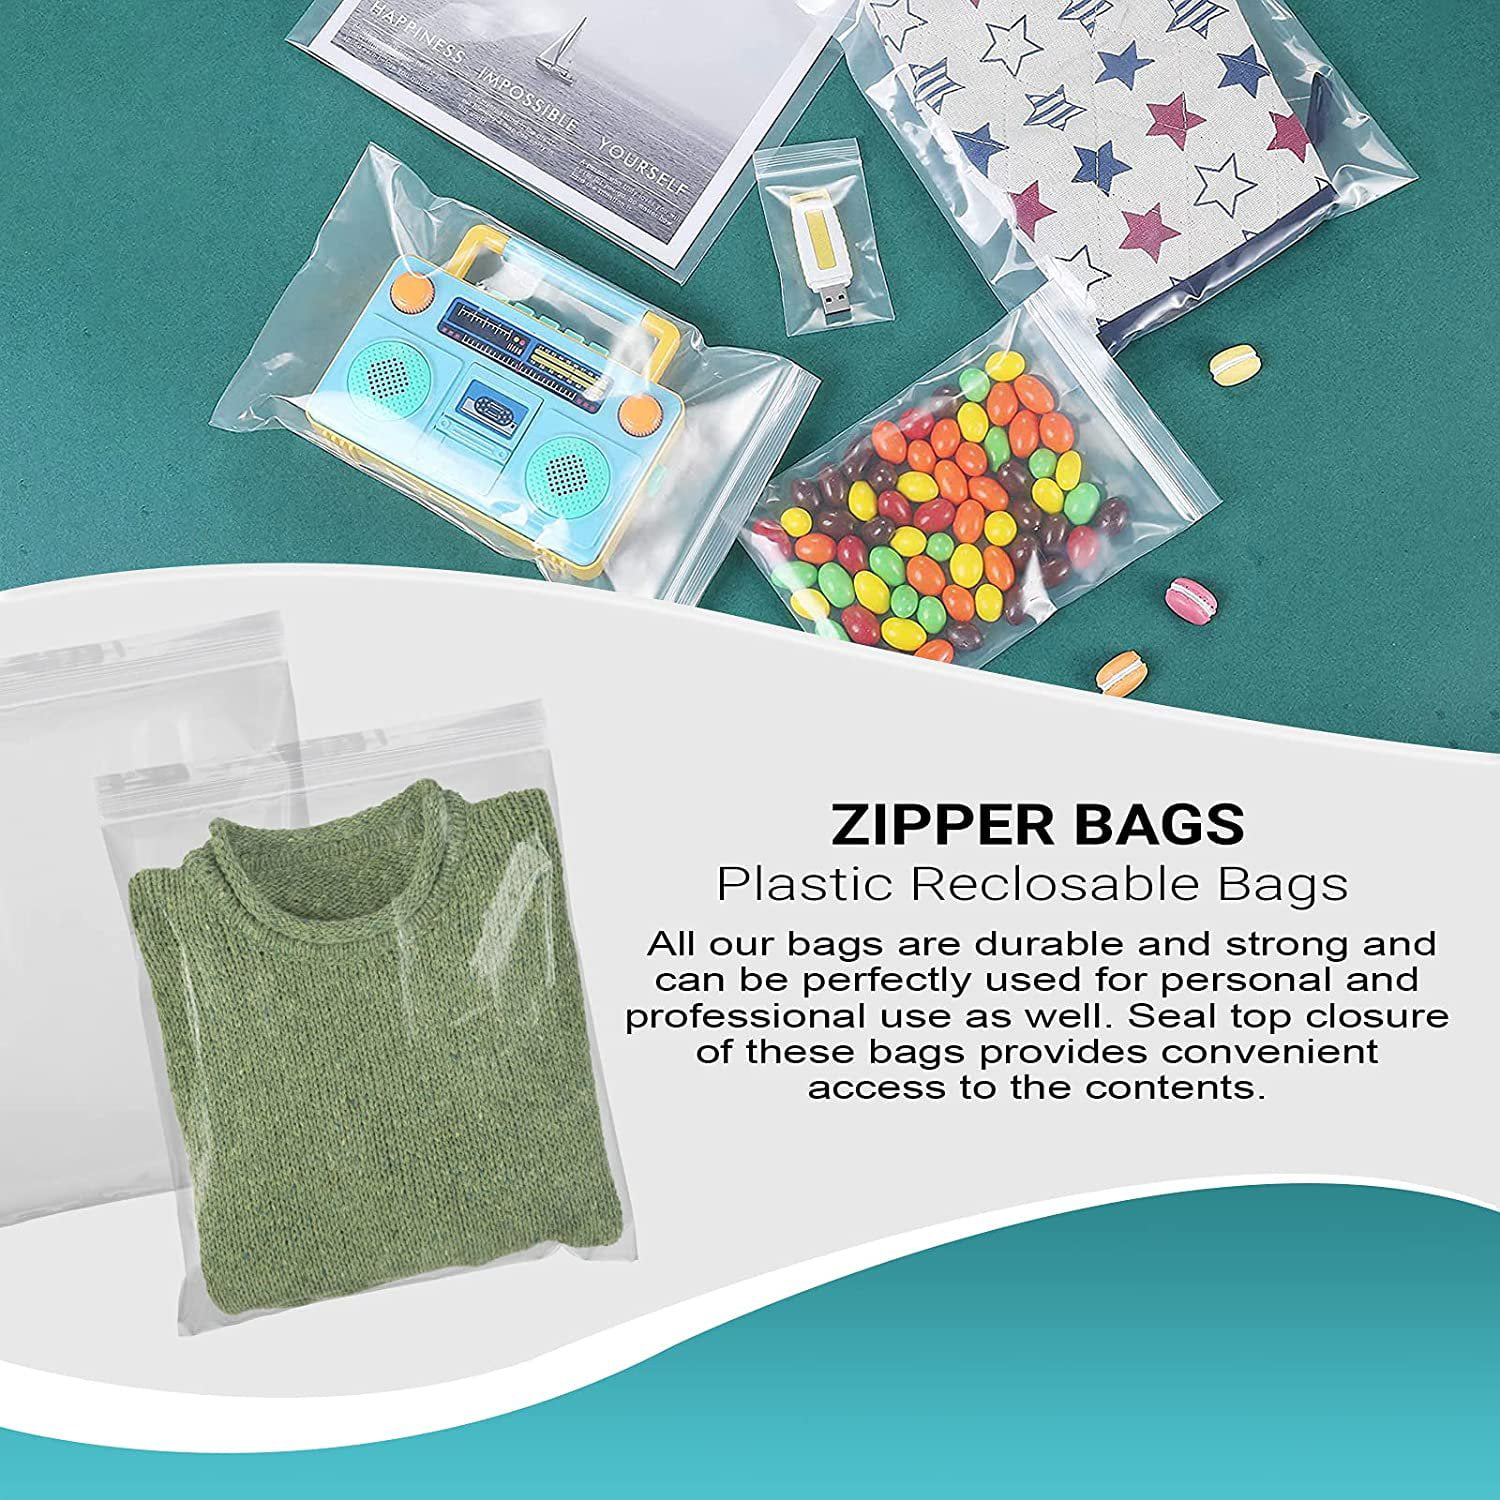 Ziploc Big Bag 20 Gallon XXL Storage Bags (3-Count) - Bliffert